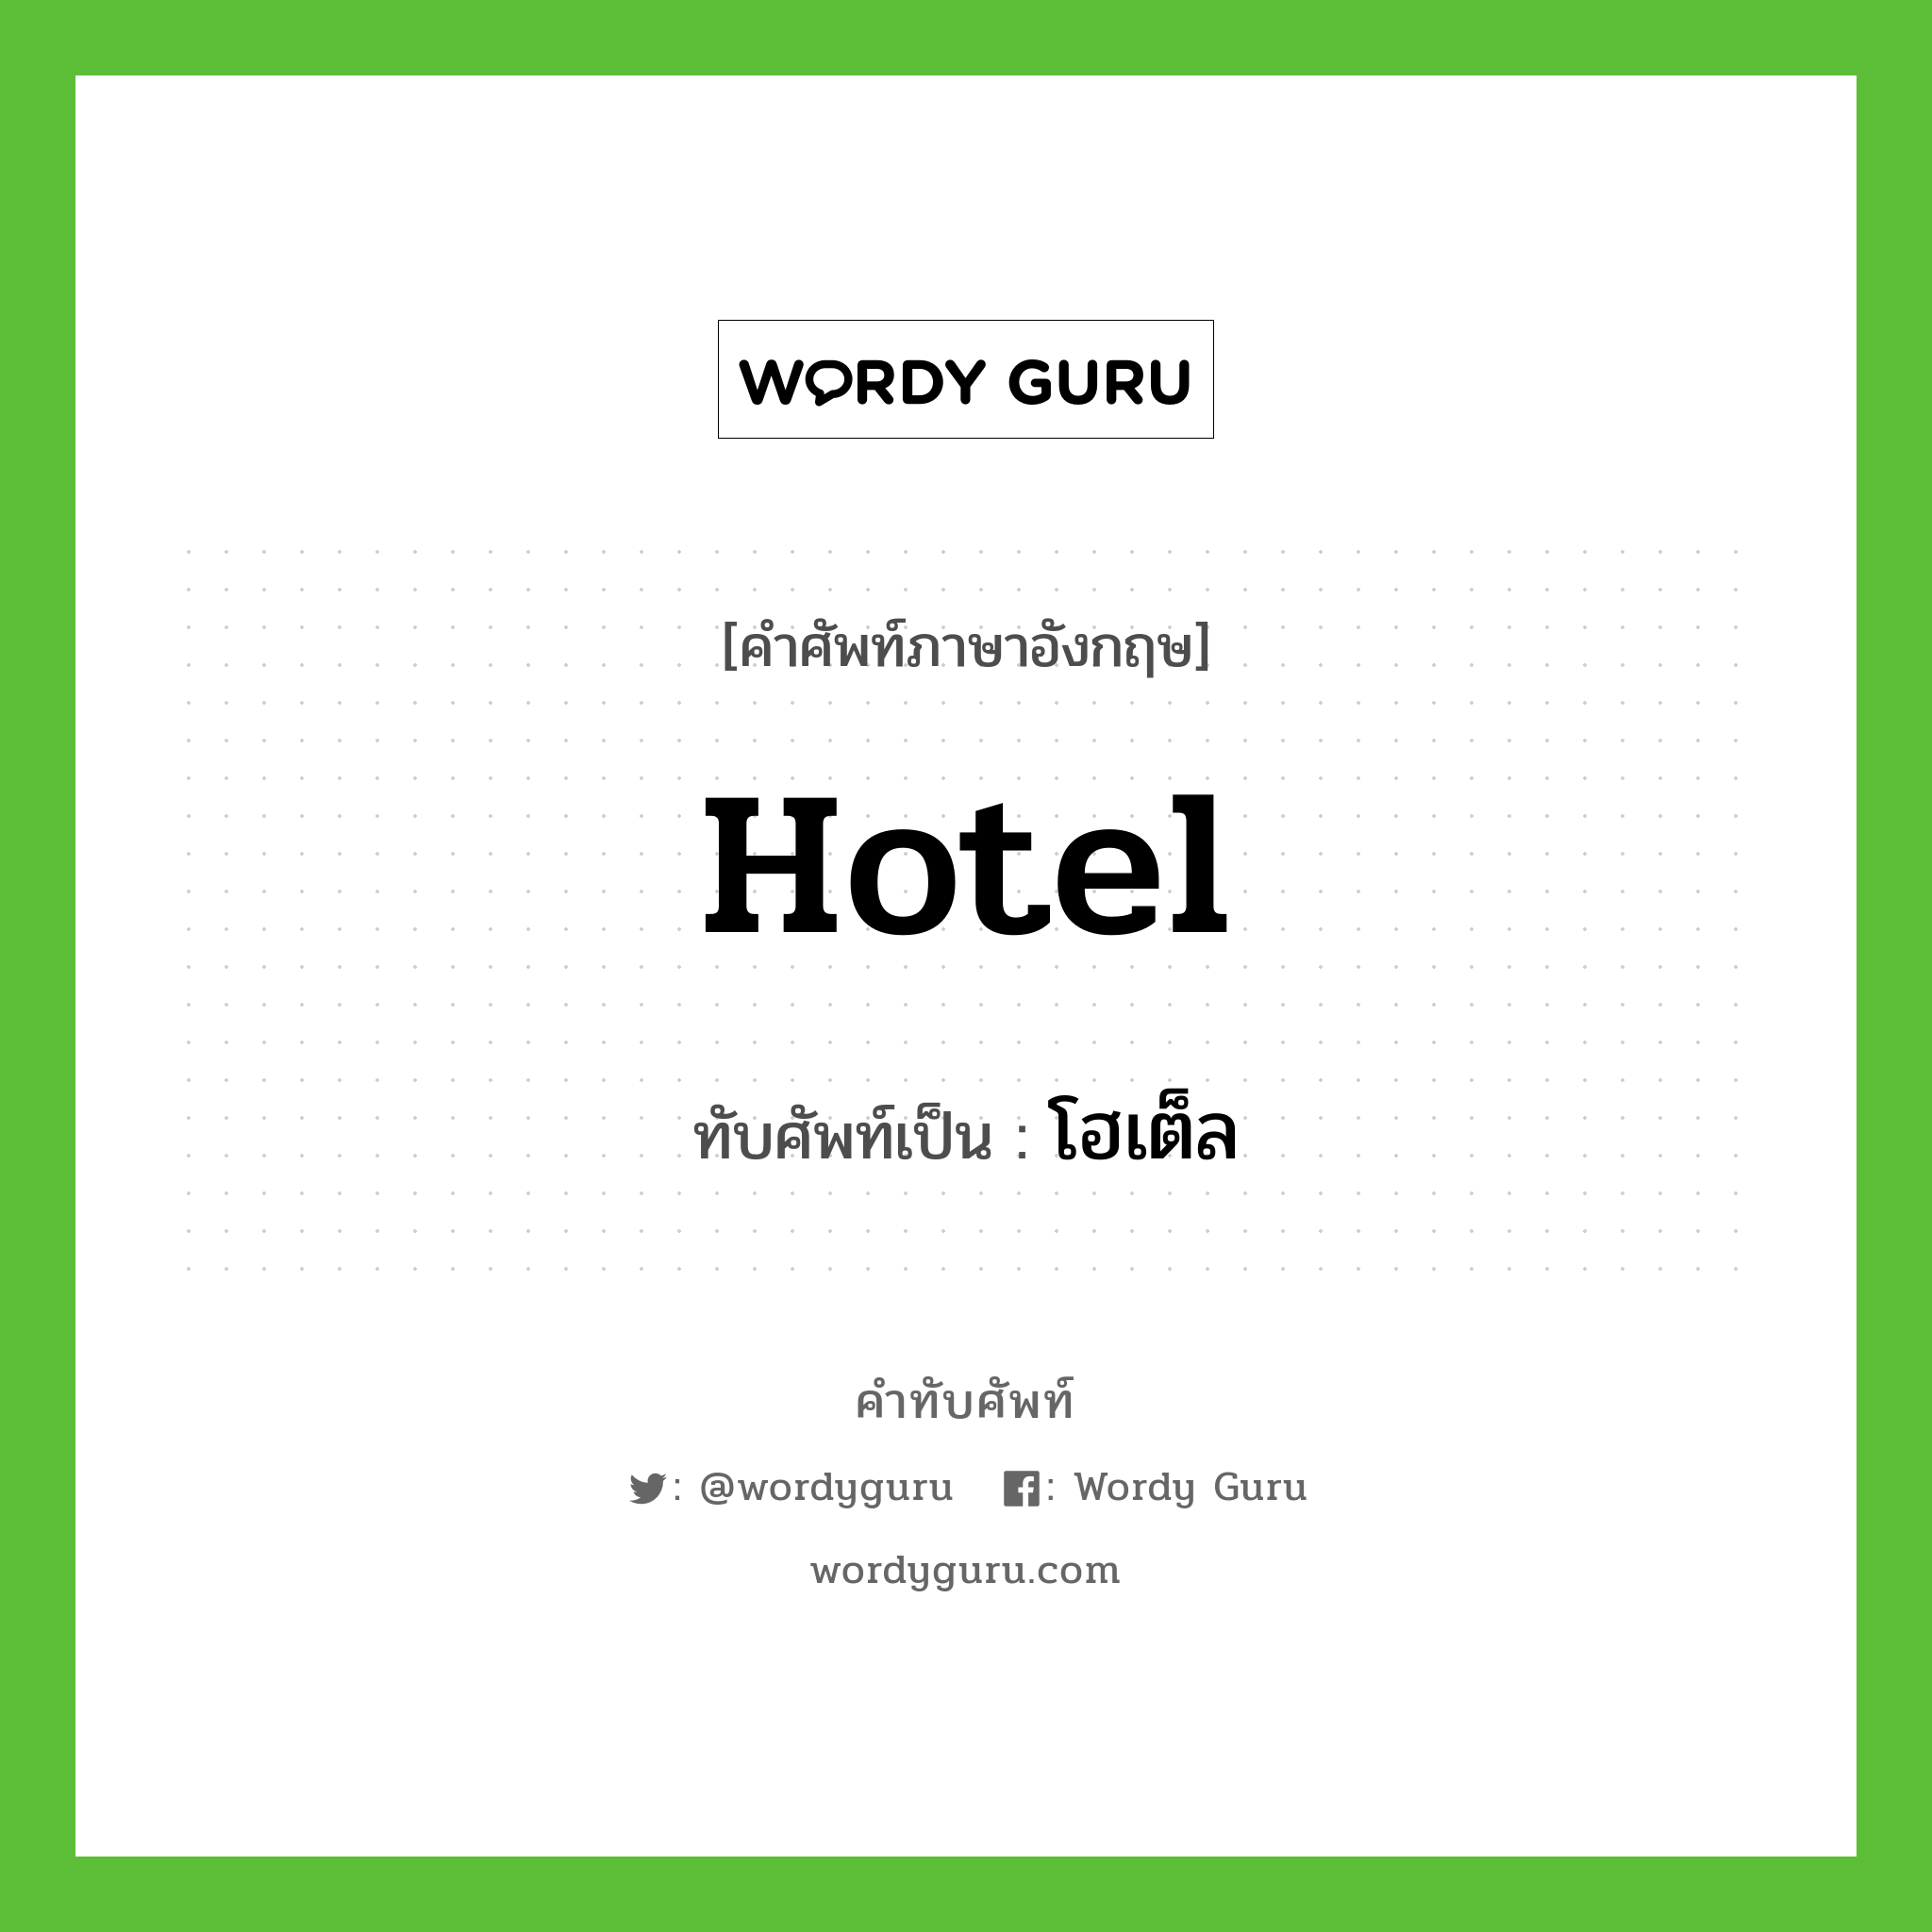 hotel เขียนเป็นคำไทยว่าอะไร?, คำศัพท์ภาษาอังกฤษ hotel ทับศัพท์เป็น โฮเต็ล